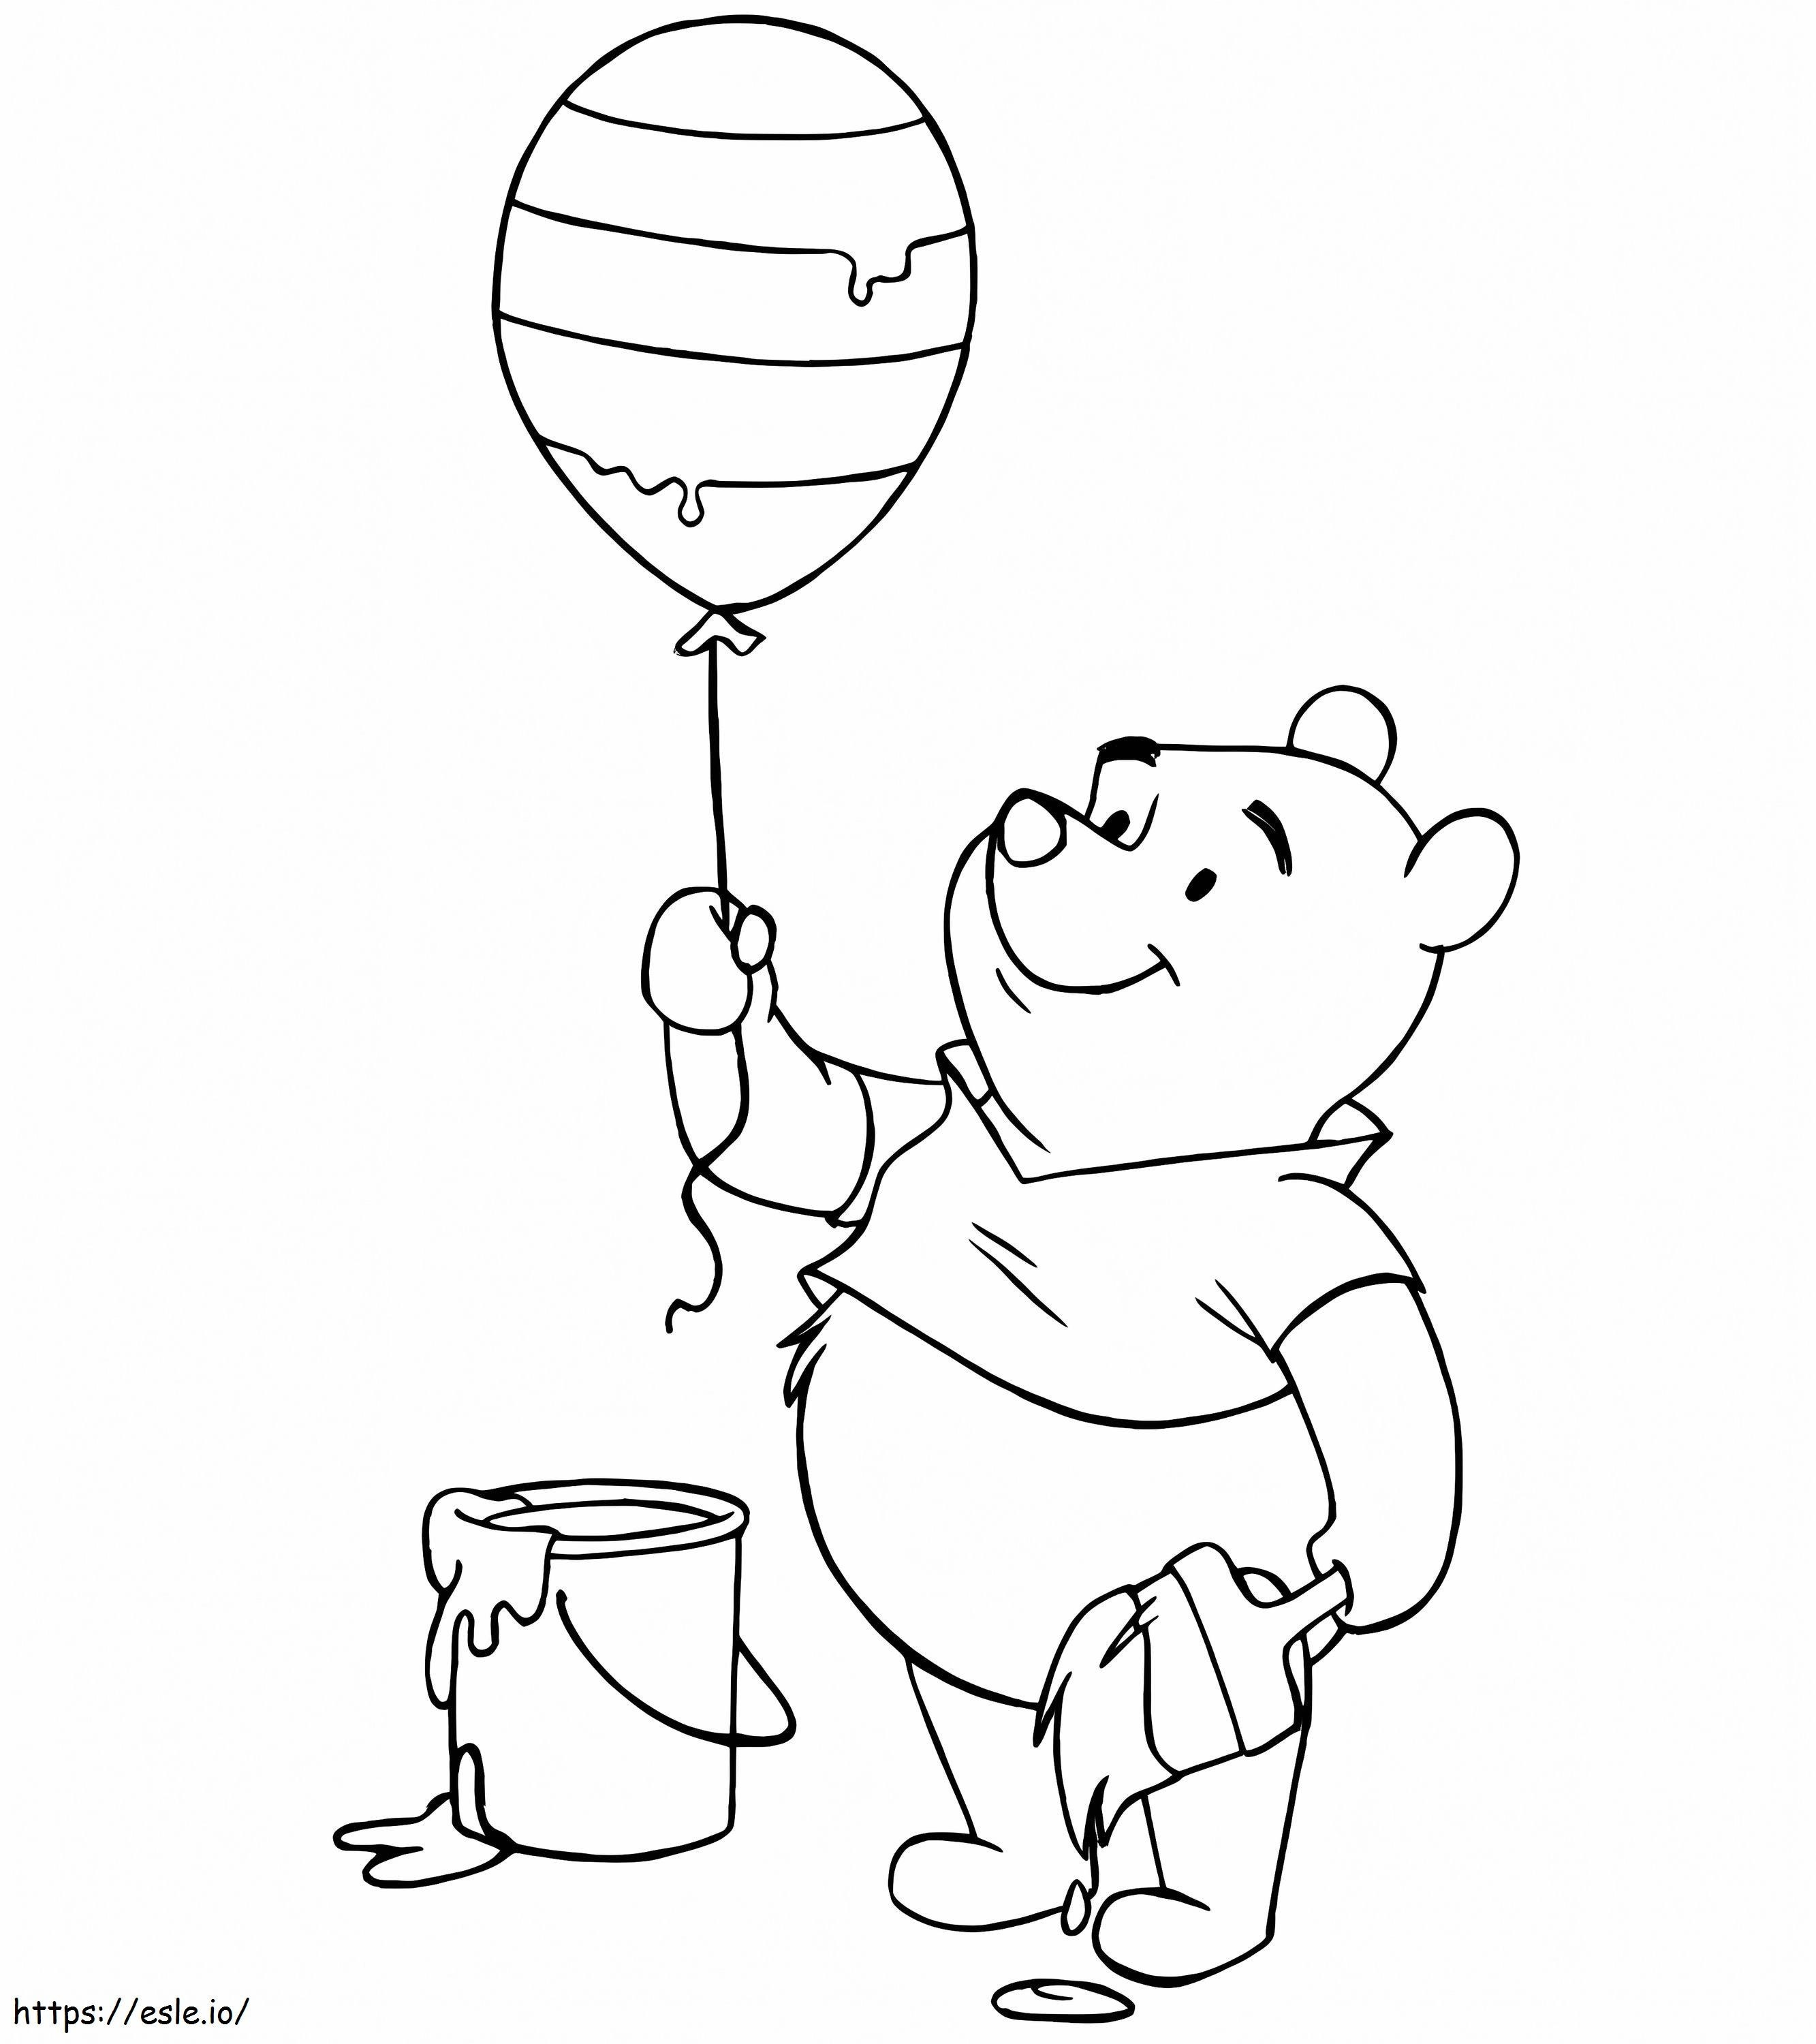 Ursulețul ținând balonul de colorat